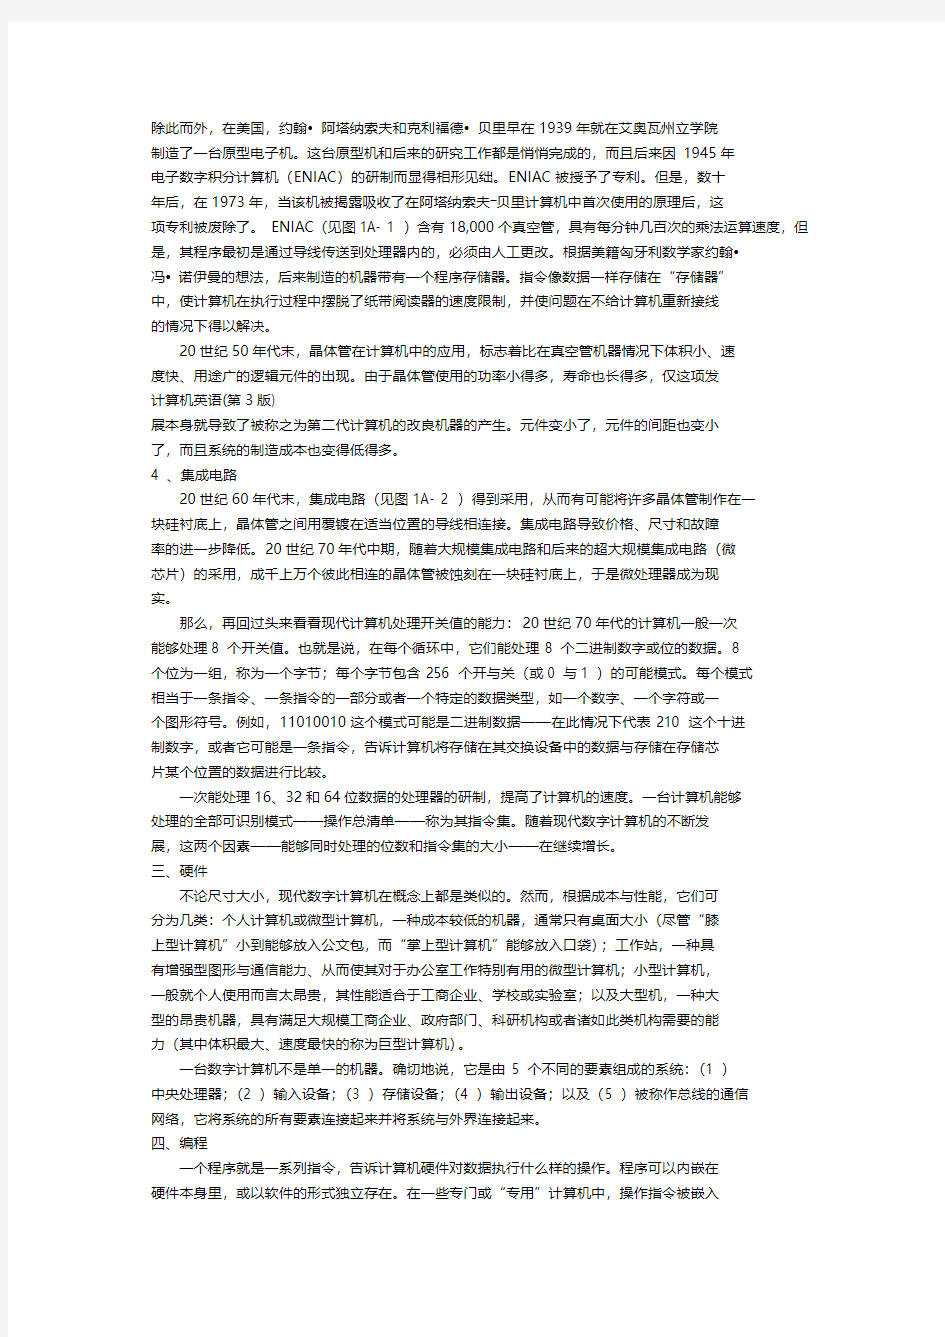 广东海洋大学学子下载   计算机英语(第4版)翻译和课后习题答案  完整版